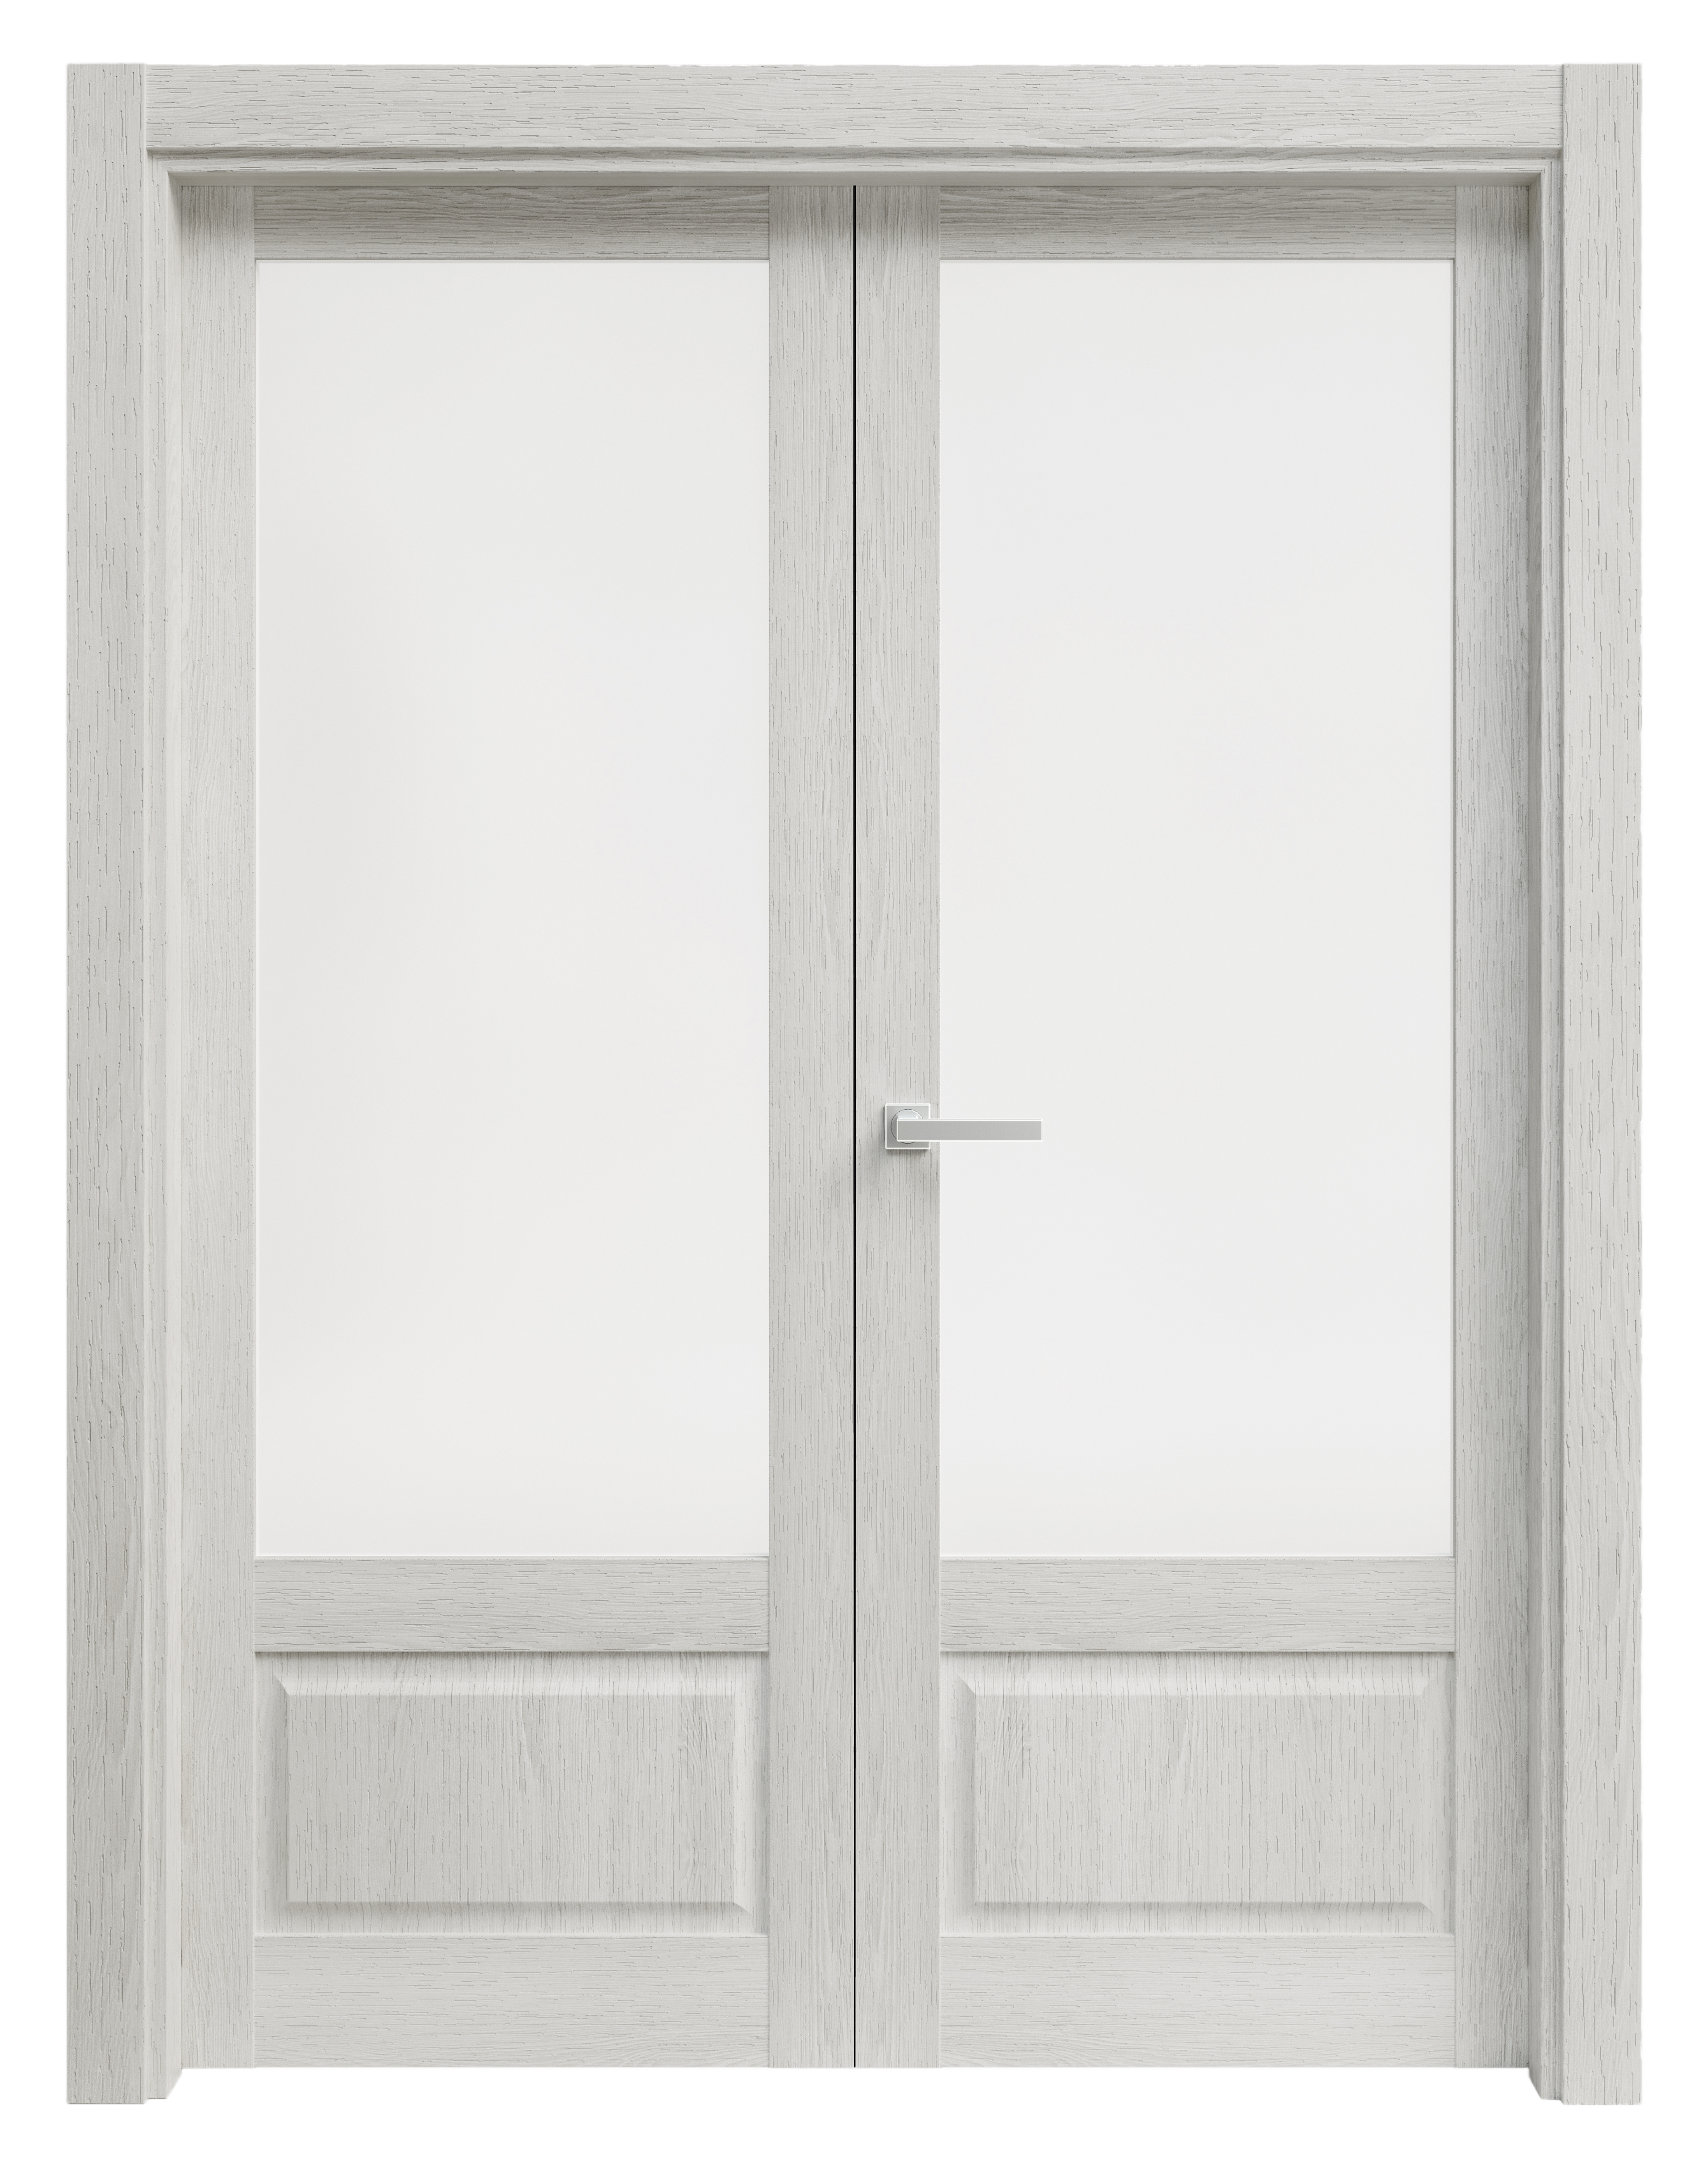 Puerta abatible sofia blanca line plus con cristal blanco izquierda de 165 c